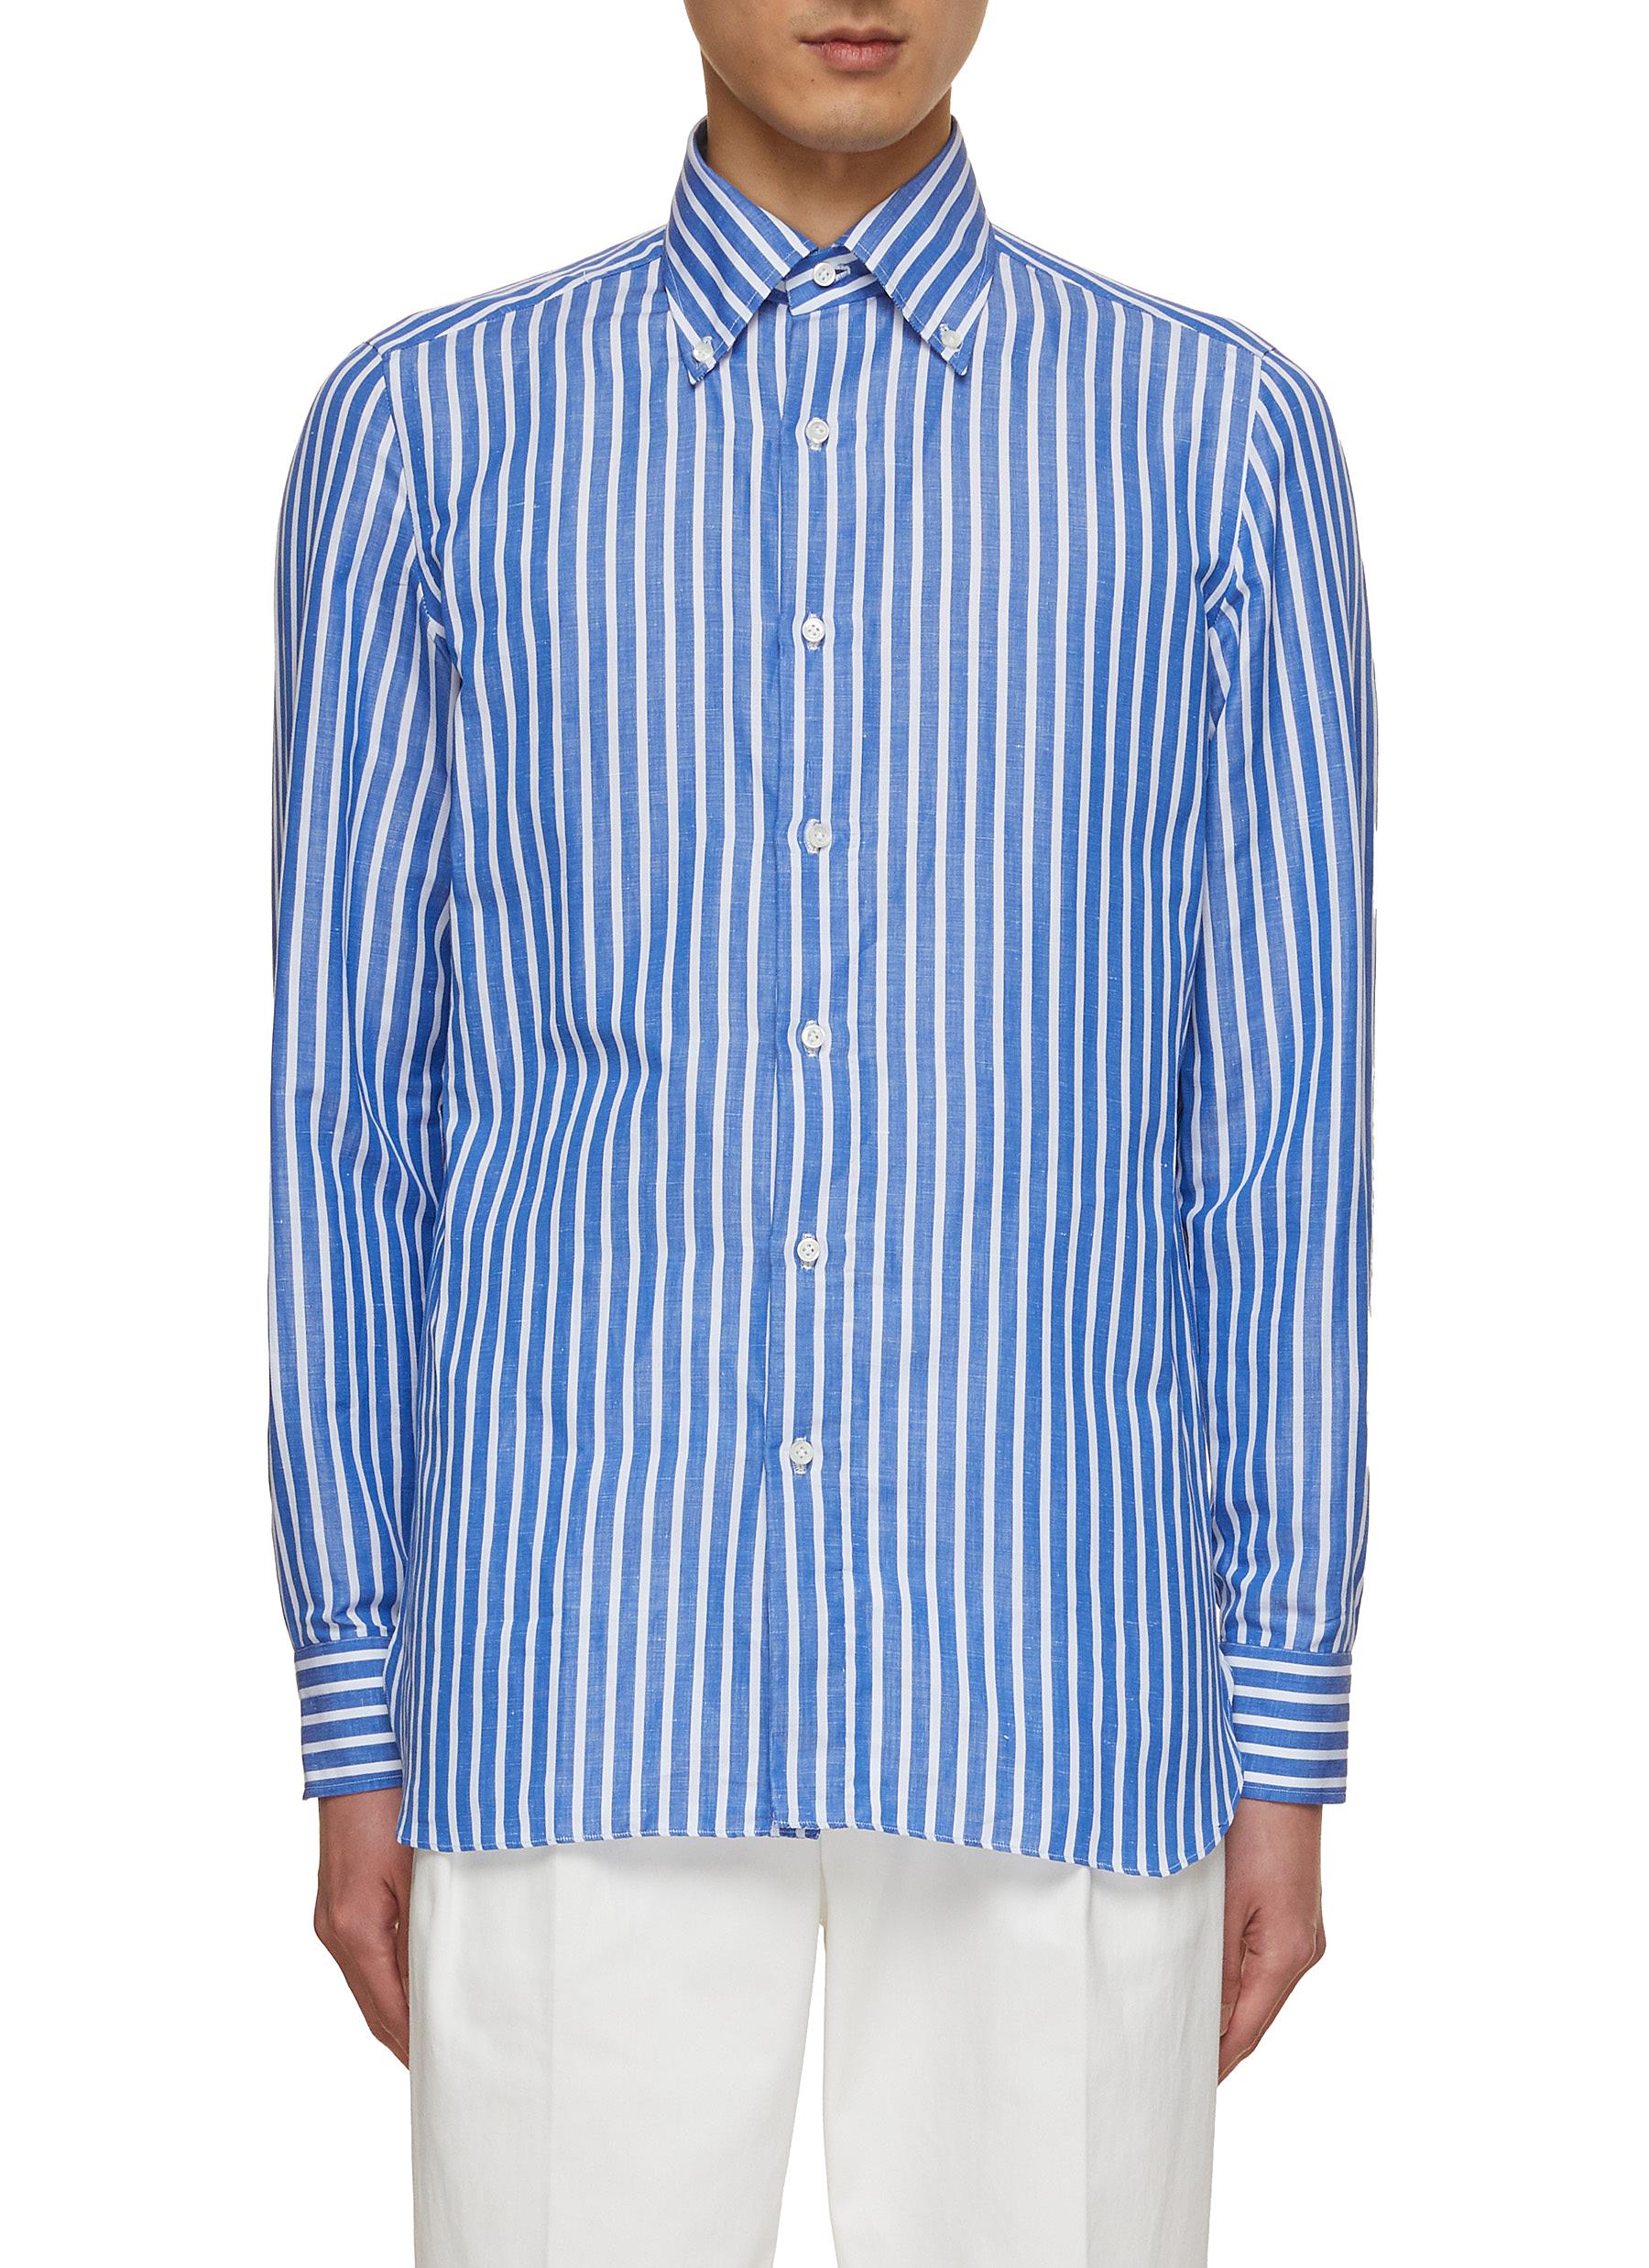 LUIGI BORRELLI - NAPOLI Button Down Collar Stripes Shirt